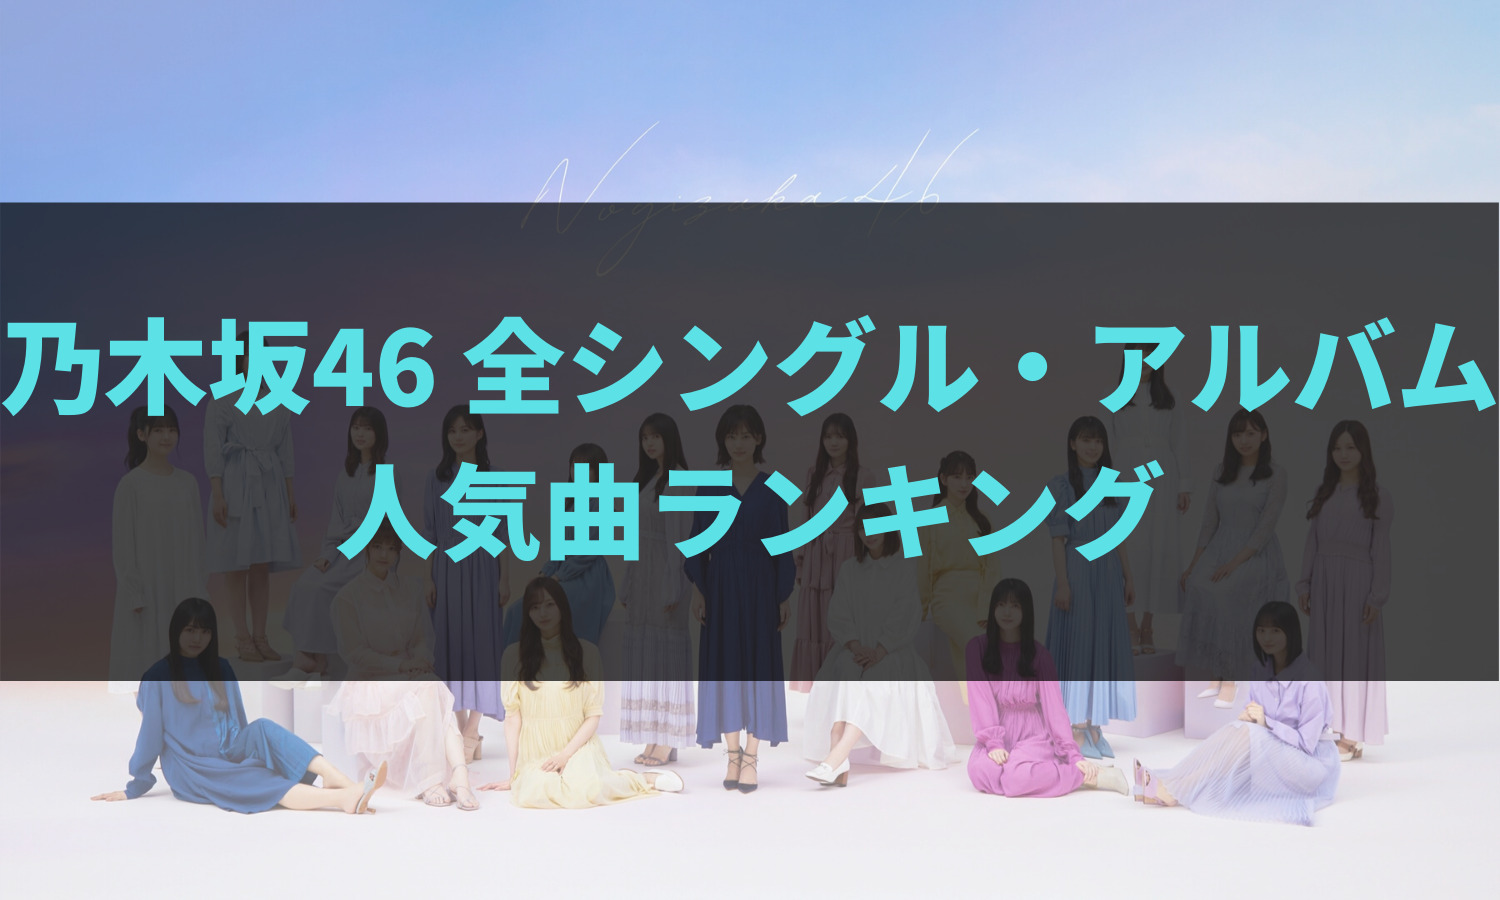 乃木坂46人気曲ランキング 配信 販売 カラオケ総合チャート 21年5月版 あの坂道を登れ